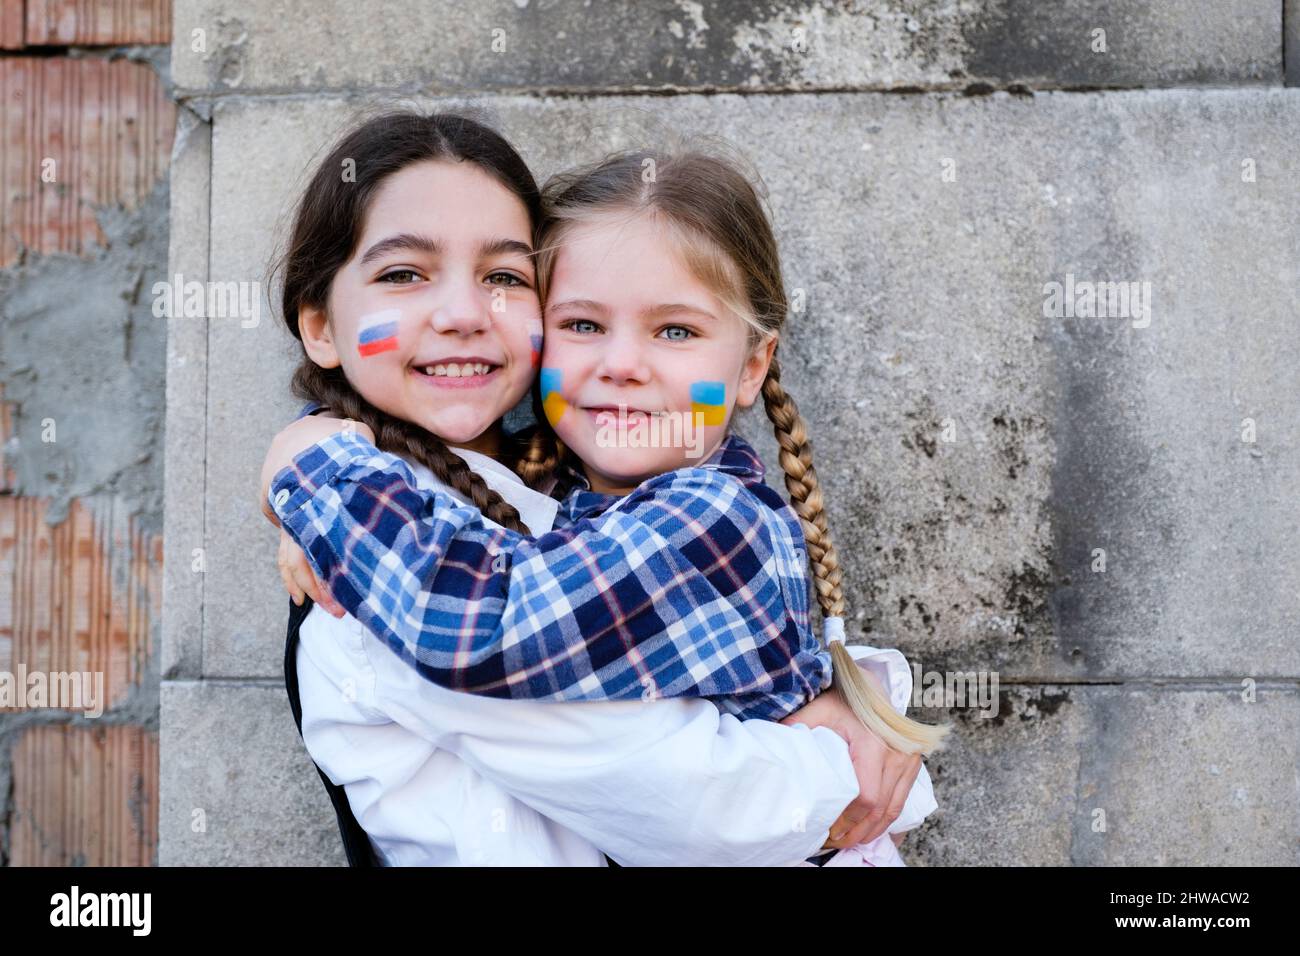 Portrait de deux petites filles qui embrassent le visage avec des drapeaux russes et ukrainiens. Concept de paix, mettre fin à la guerre et à l'amitié des enfants Banque D'Images